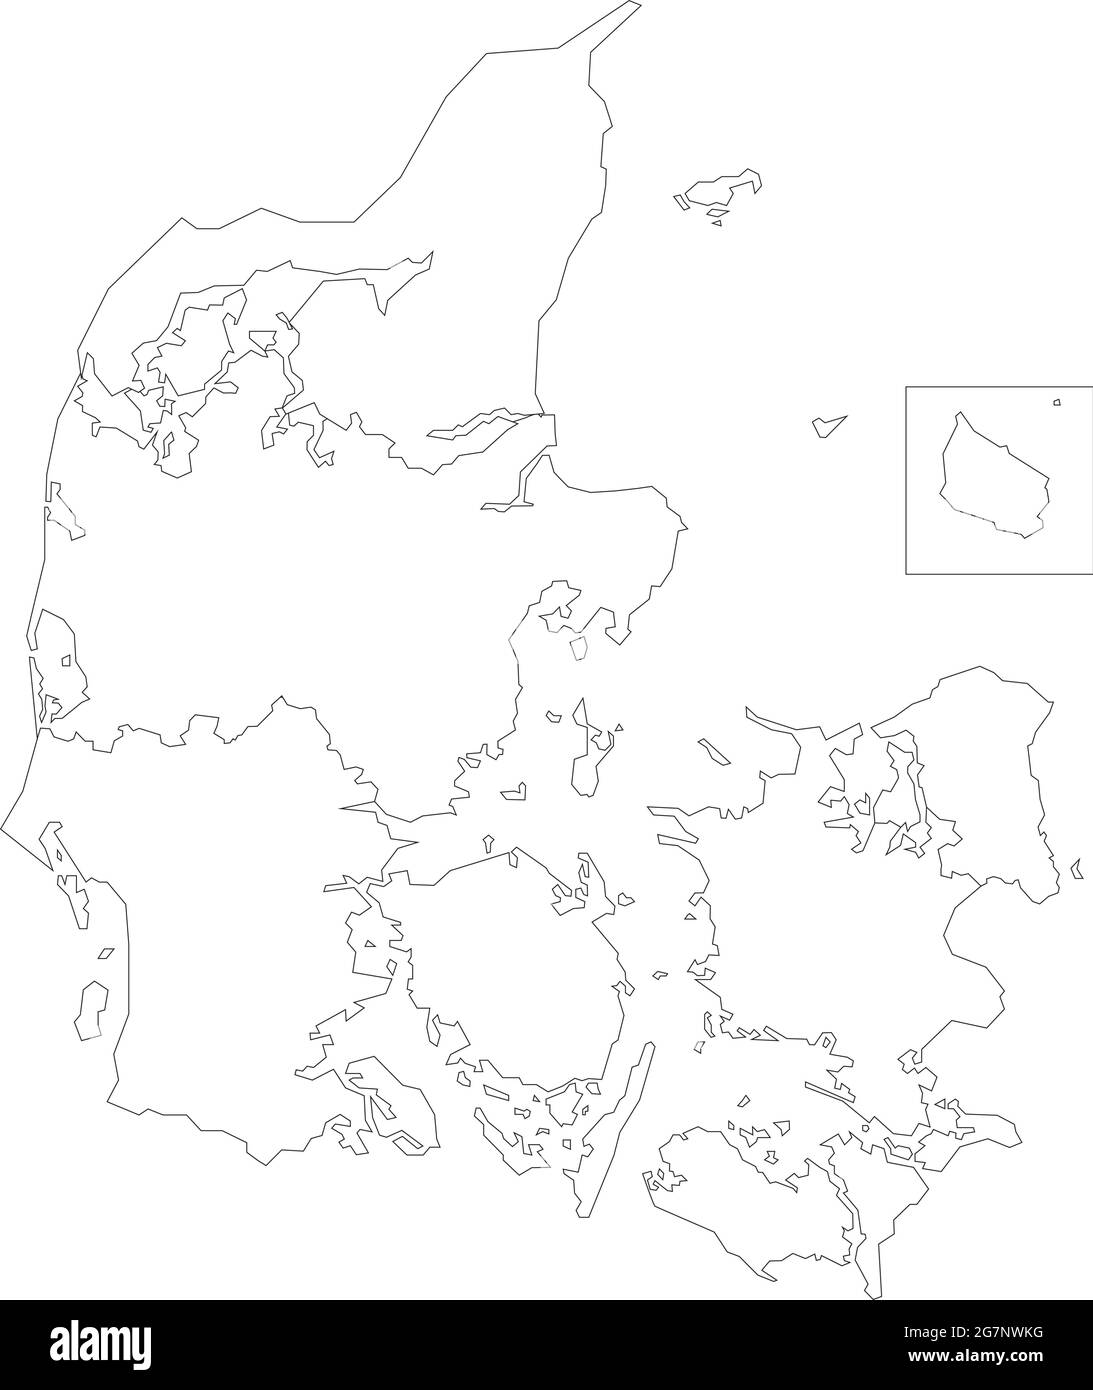 Vektorkarte von Dänemark, farblos mit Umriss, schwarz und weiß zu studieren Stock Vektor